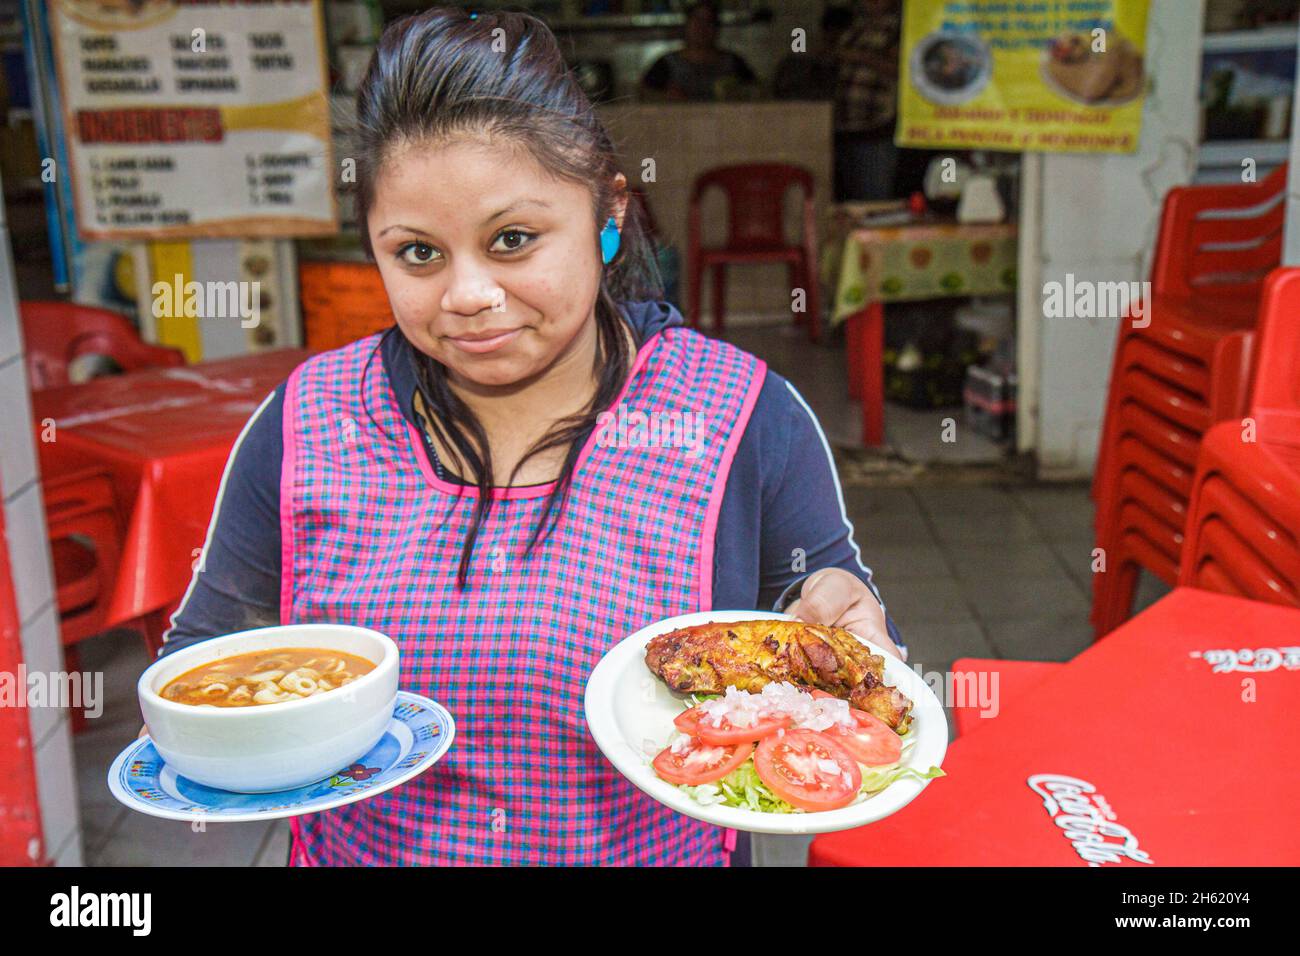 Cancun Mexique, Mexicain, Mercado 23, femme hispanique, serveuse serveur employé de restaurant servant soupe salade poulet rôti Banque D'Images